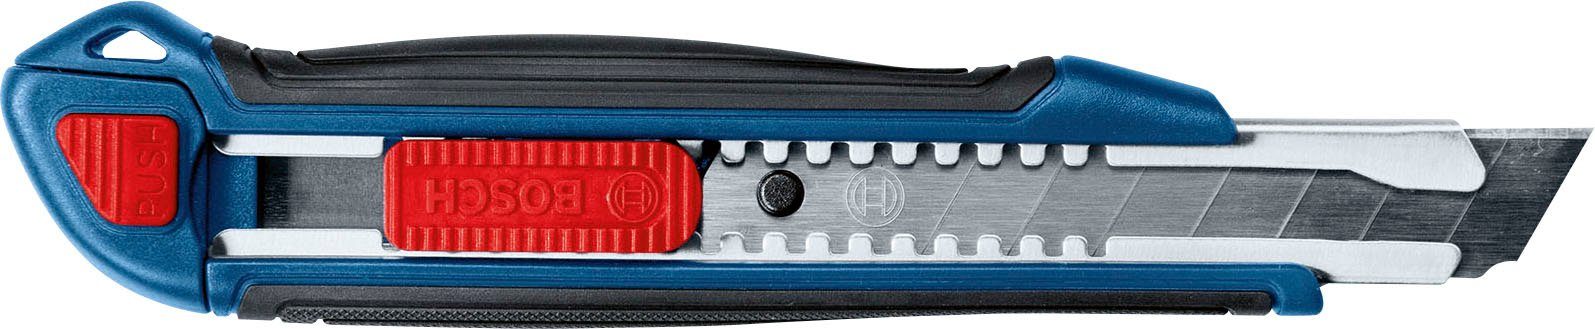 Bosch Cuttermesser (1600A027M4), (Set, Cuttermesser 3-tlg), Universal-, und Professional Klapp-